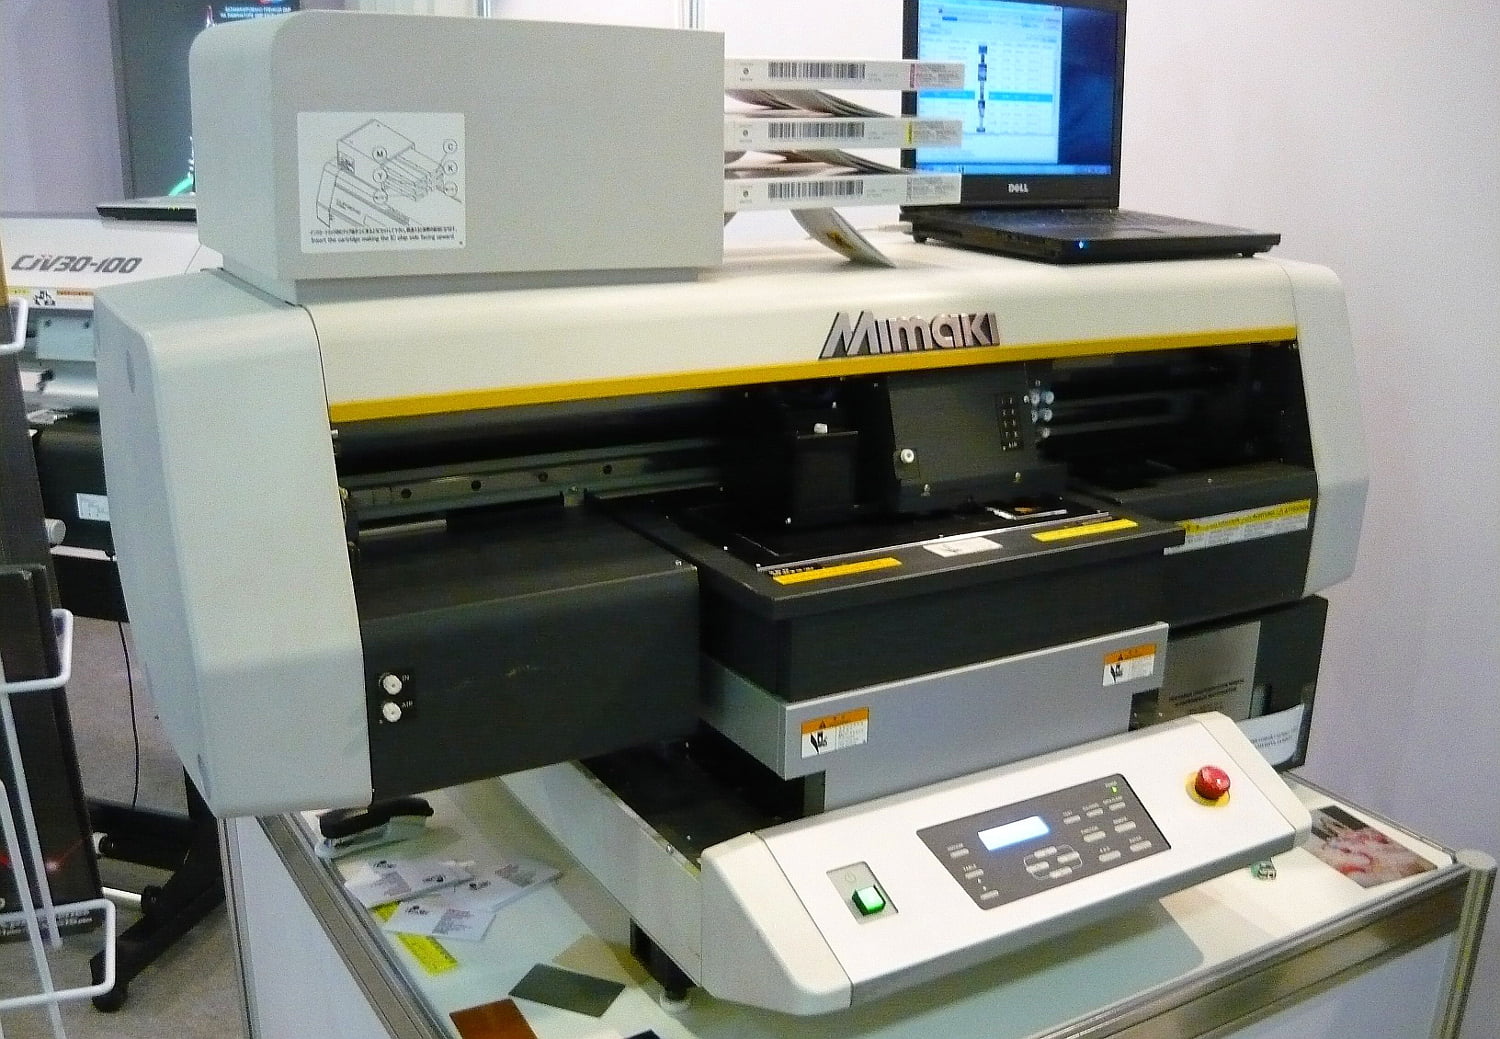 Ультрафиолетовые принтеры фирмы Mimaki